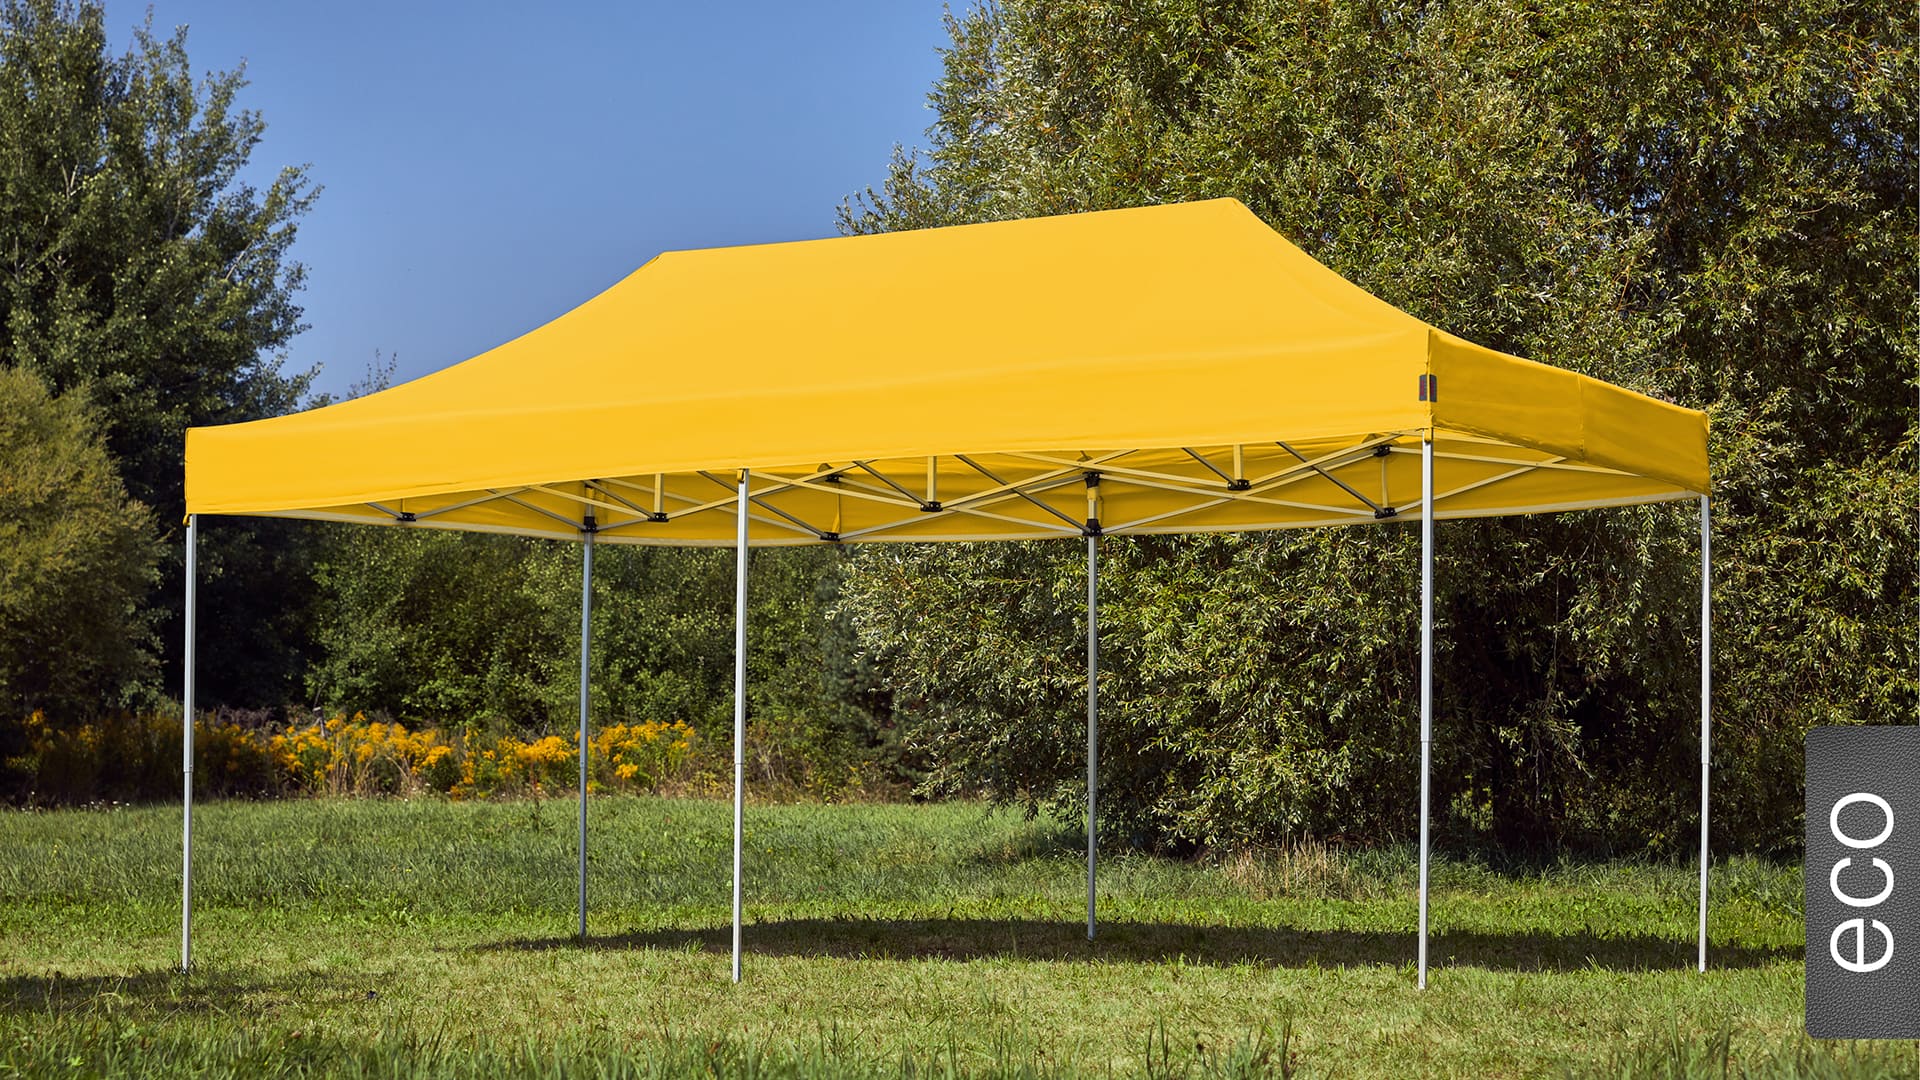 Der 6x3 Faltpavillon der Produktlinie eco mit einem gelben Dach aufgestellt im Garten.